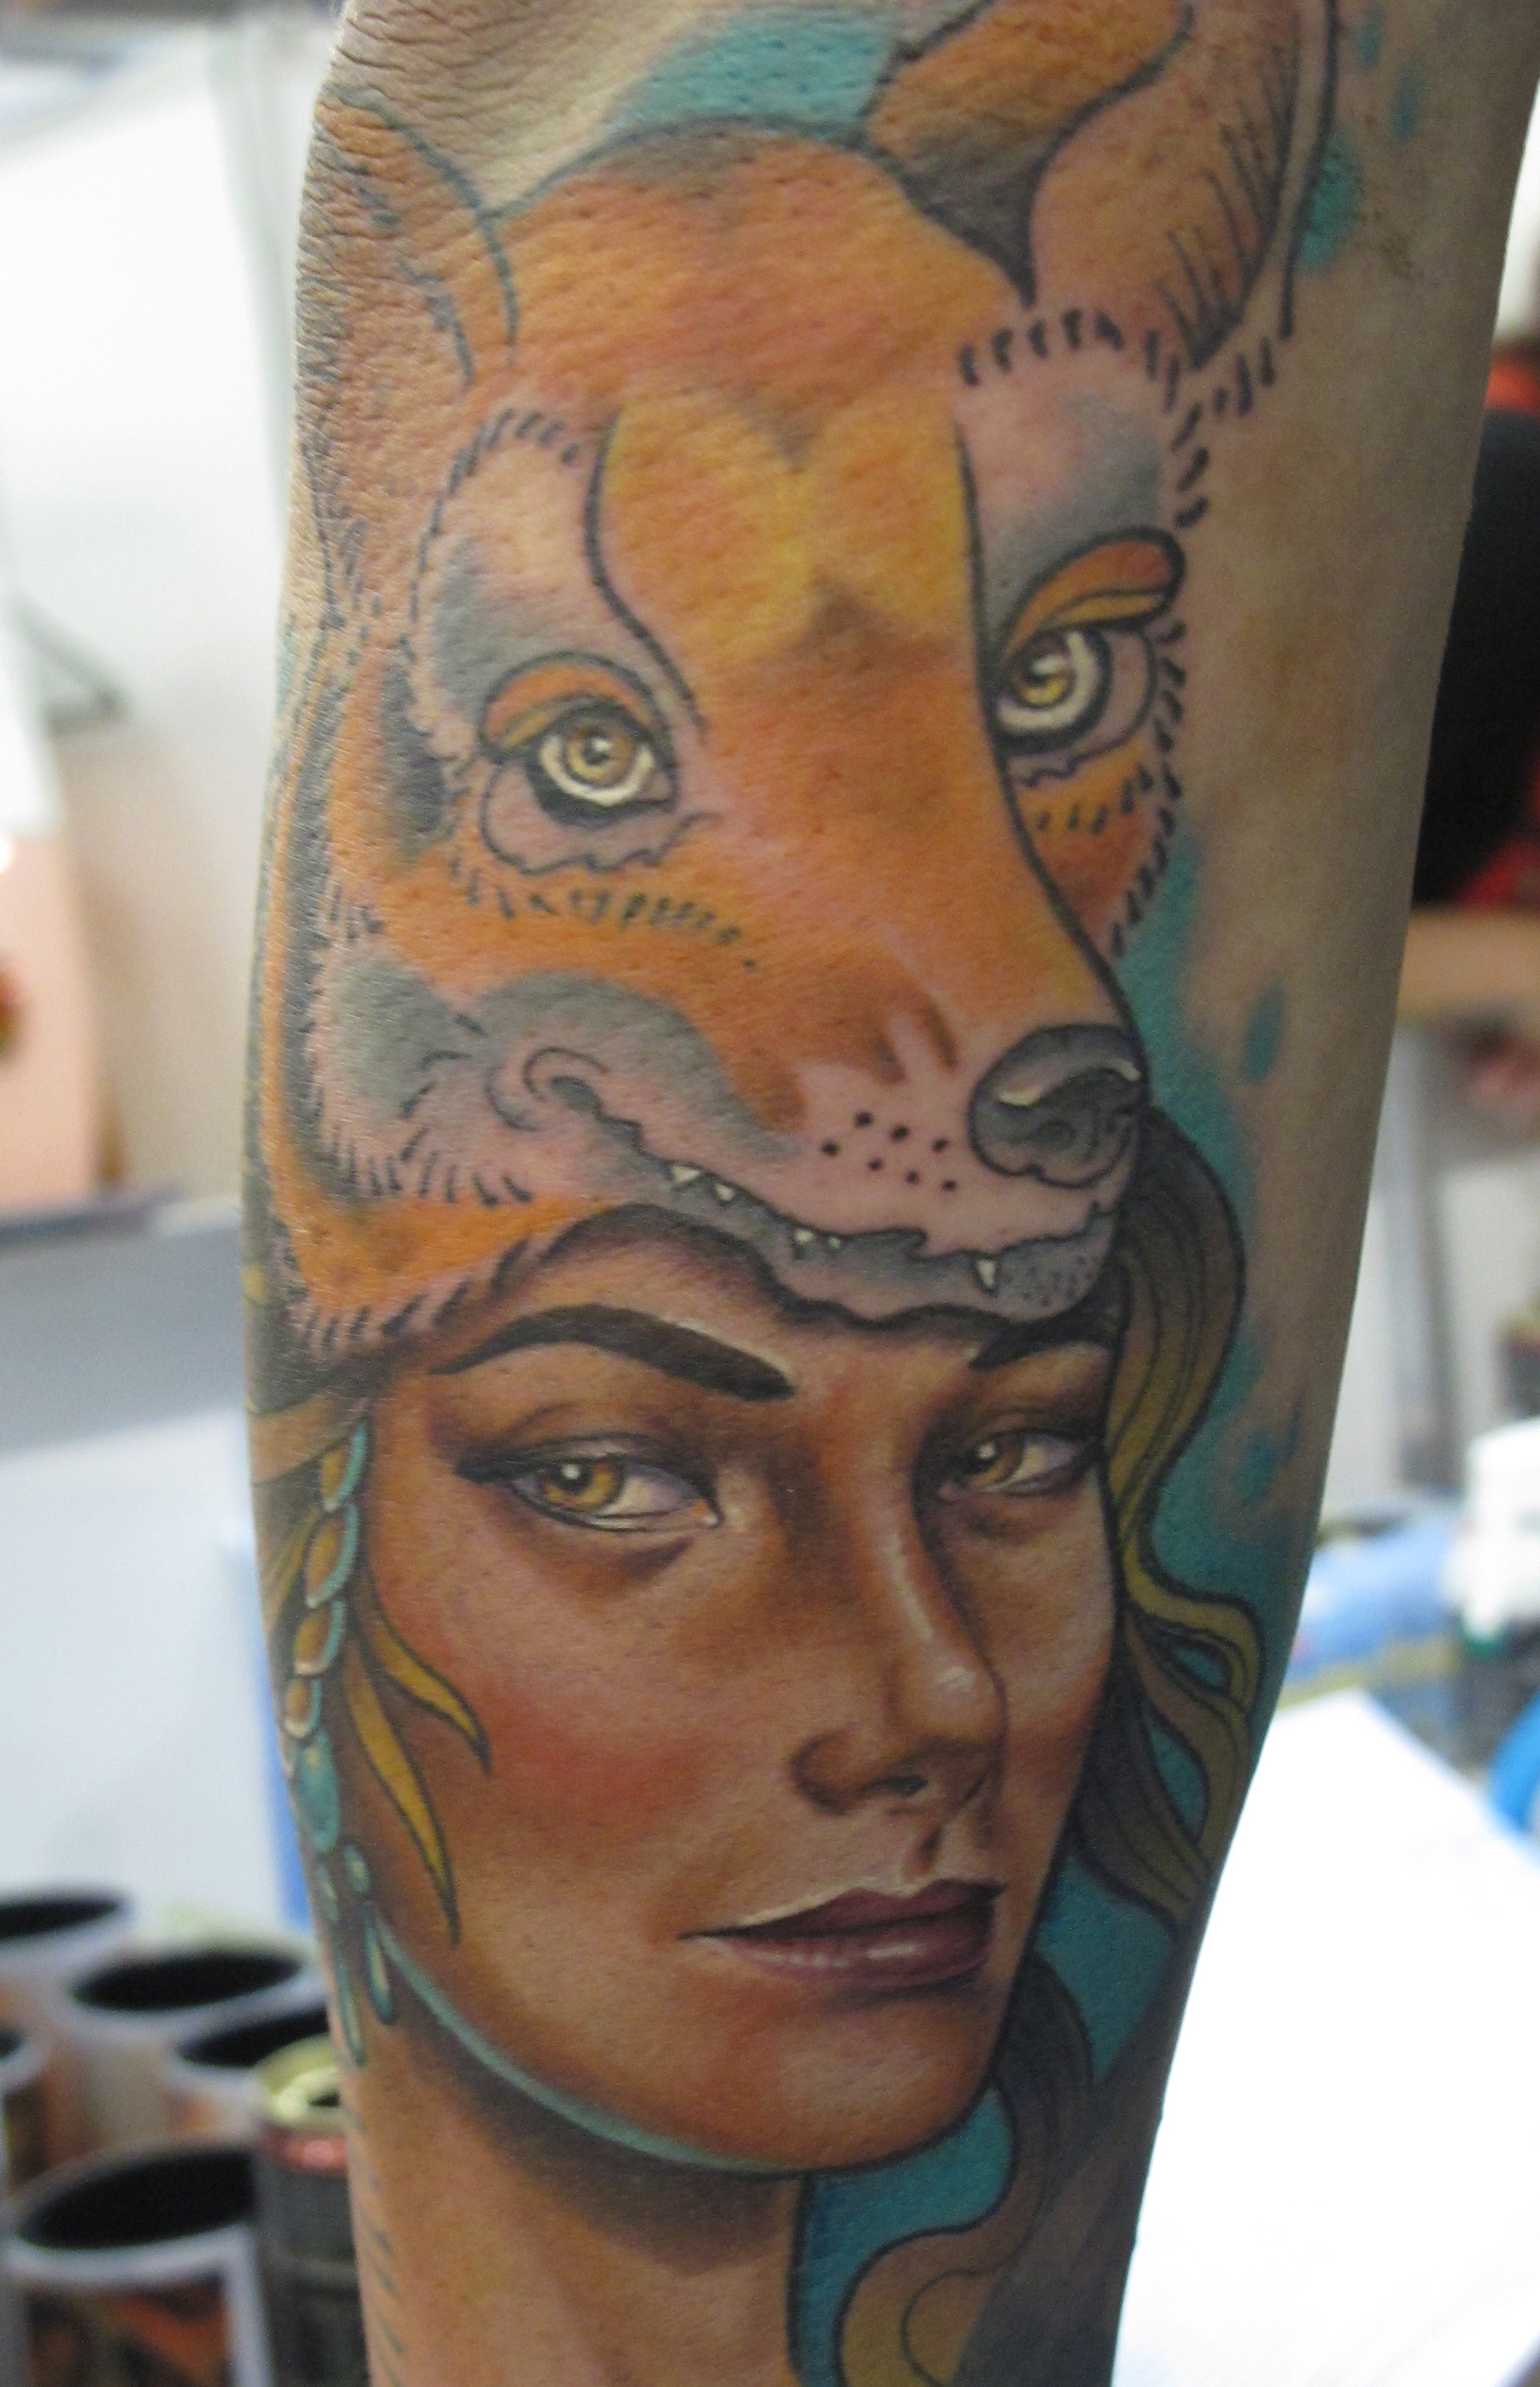 Tattoo Artist Tattoos Client